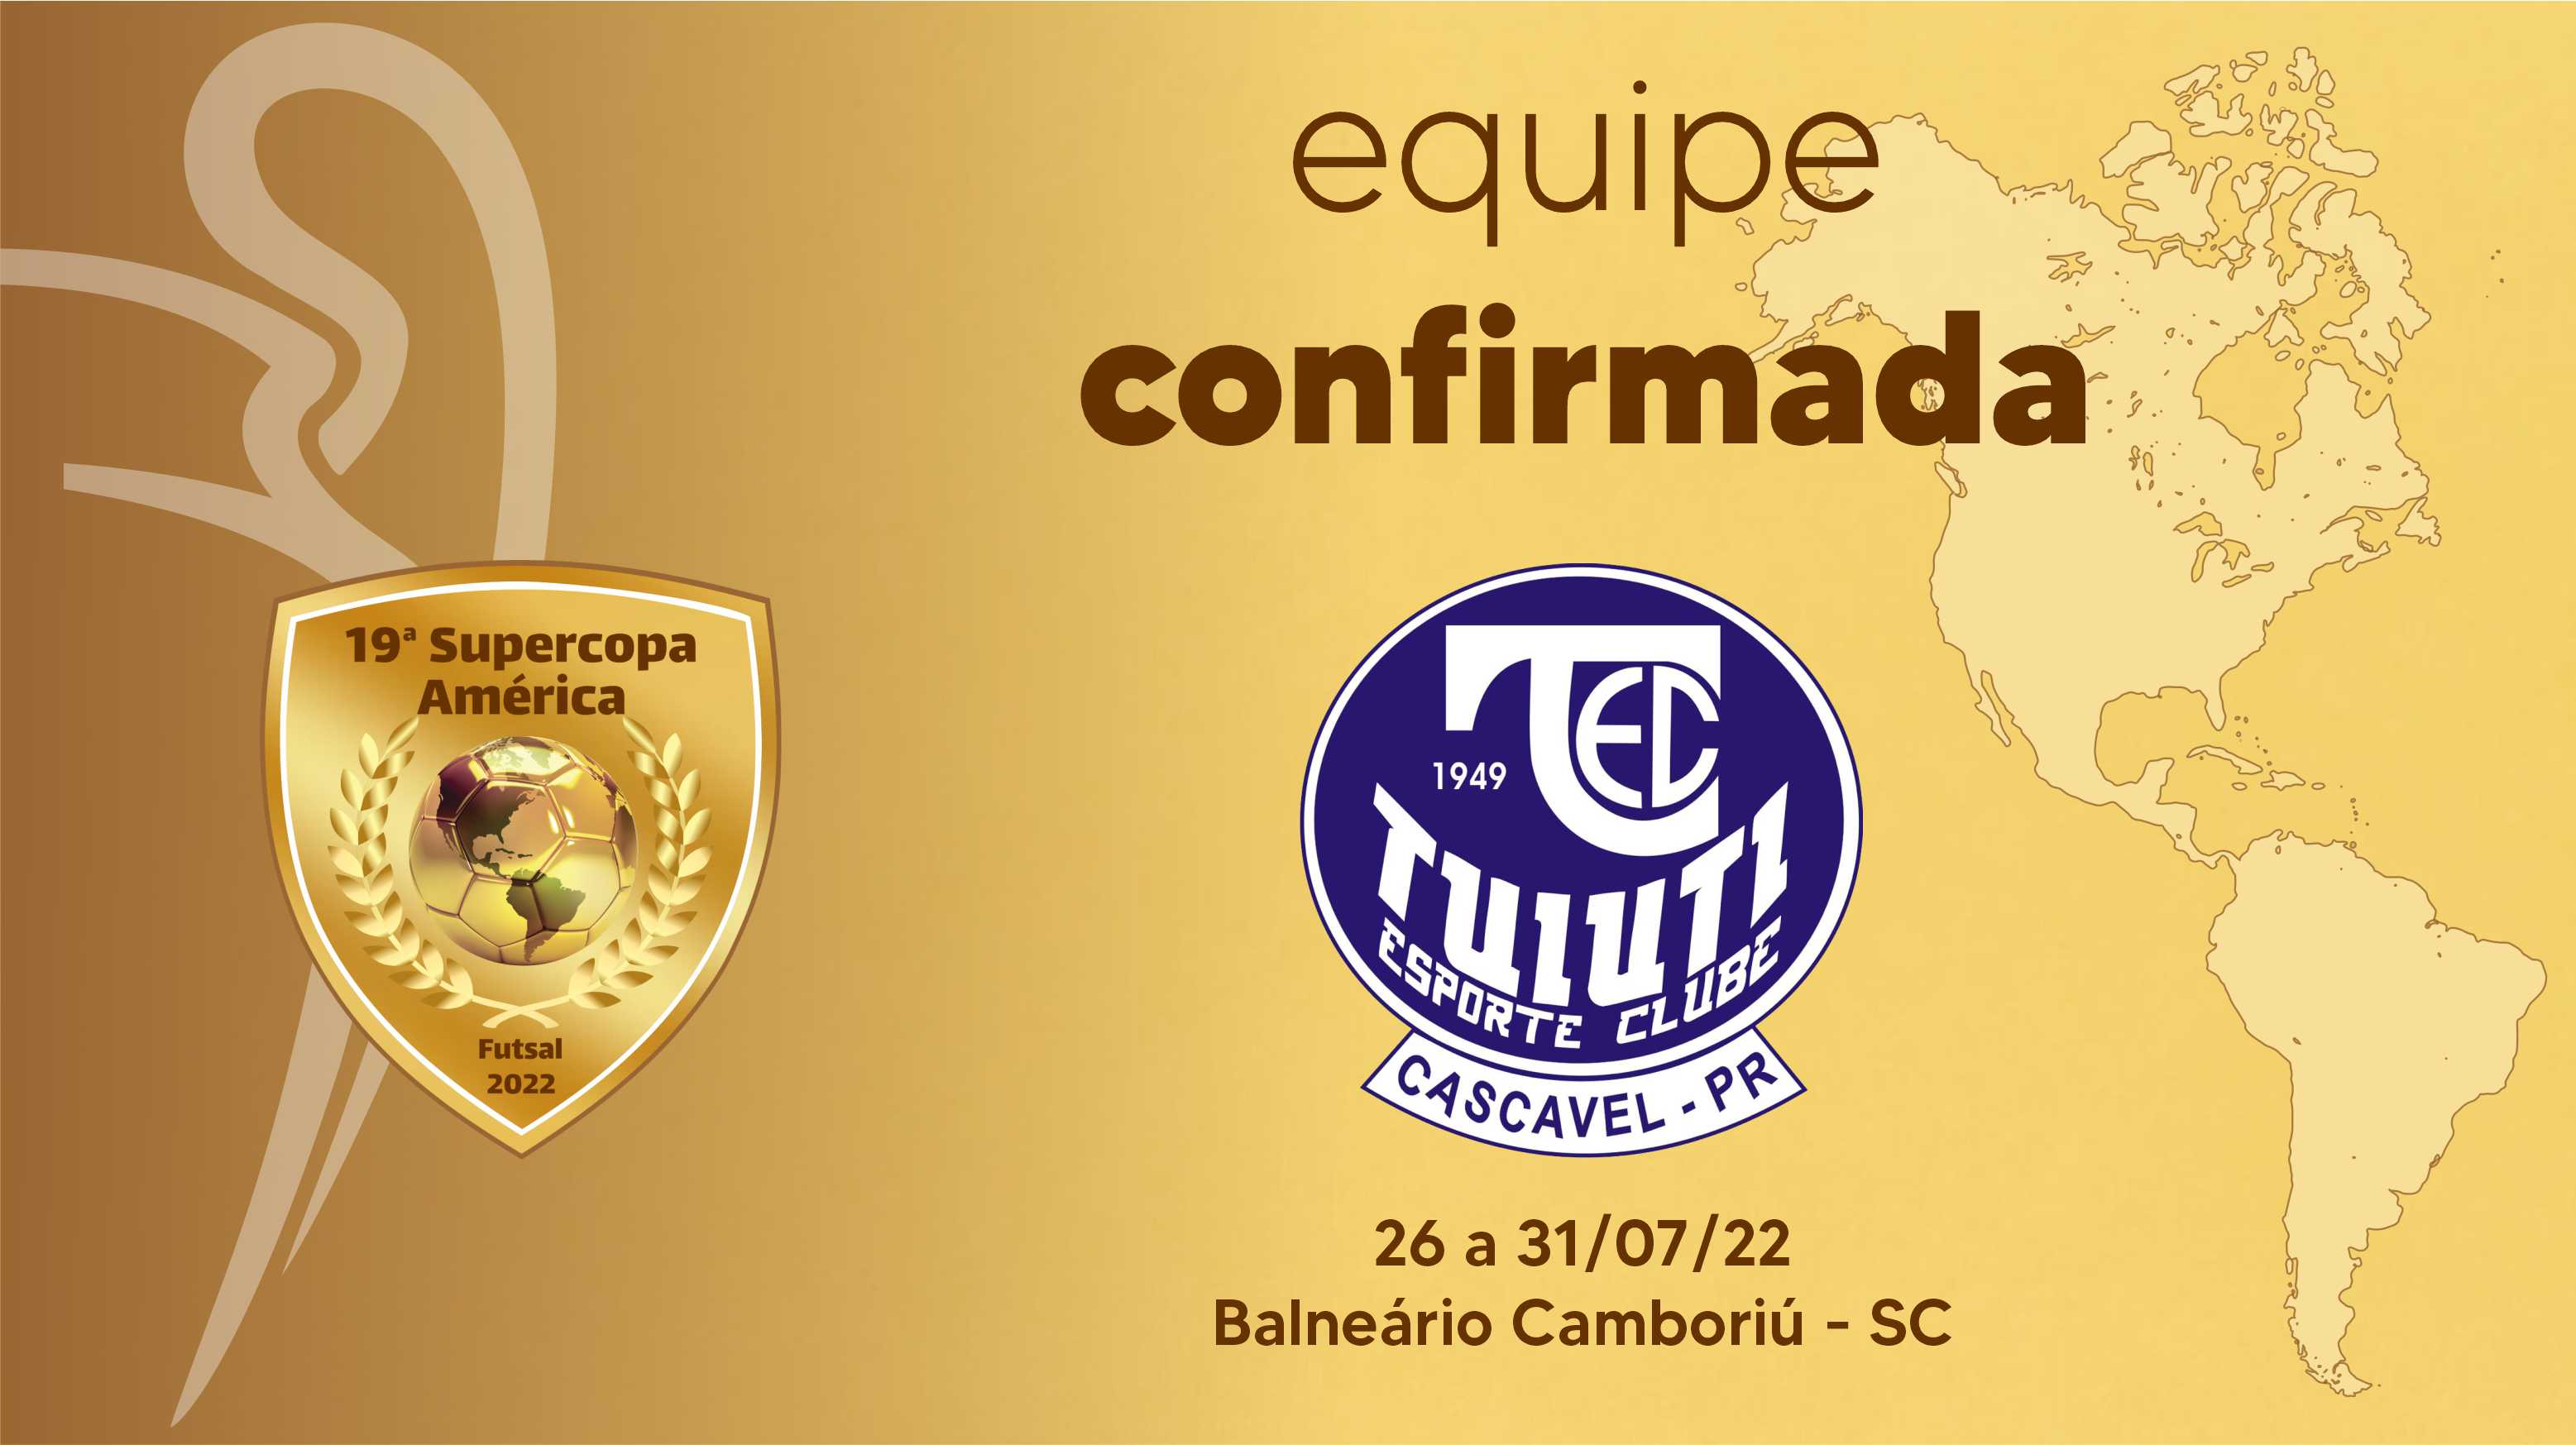 Tuiuti representa Cascavel e o Oeste do Paraná na Supercopa